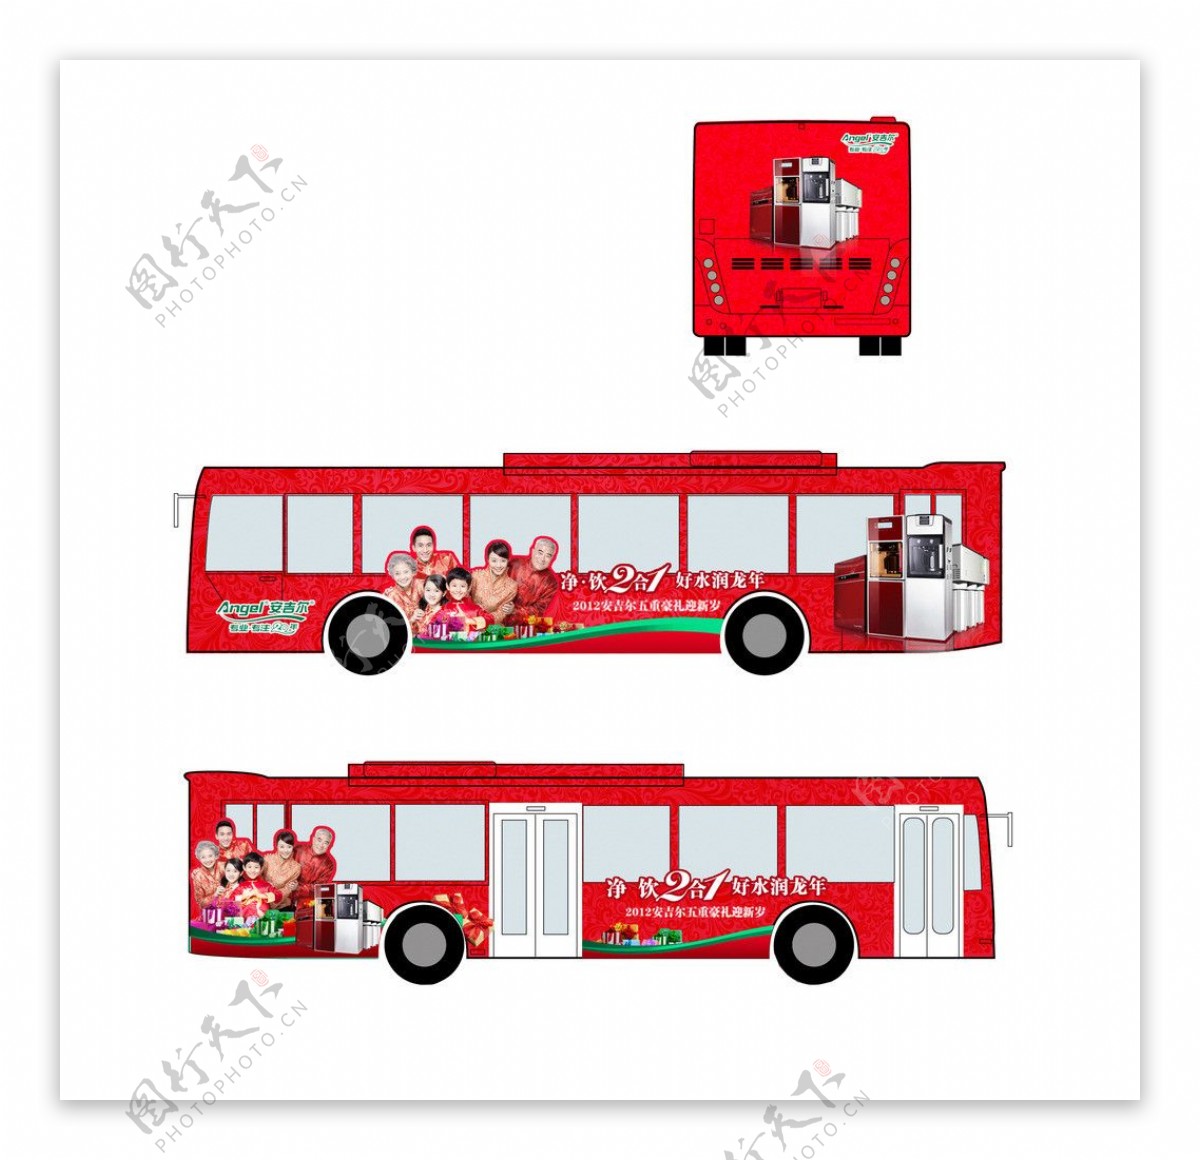 安吉尔2012年元旦促销巴士车身广告